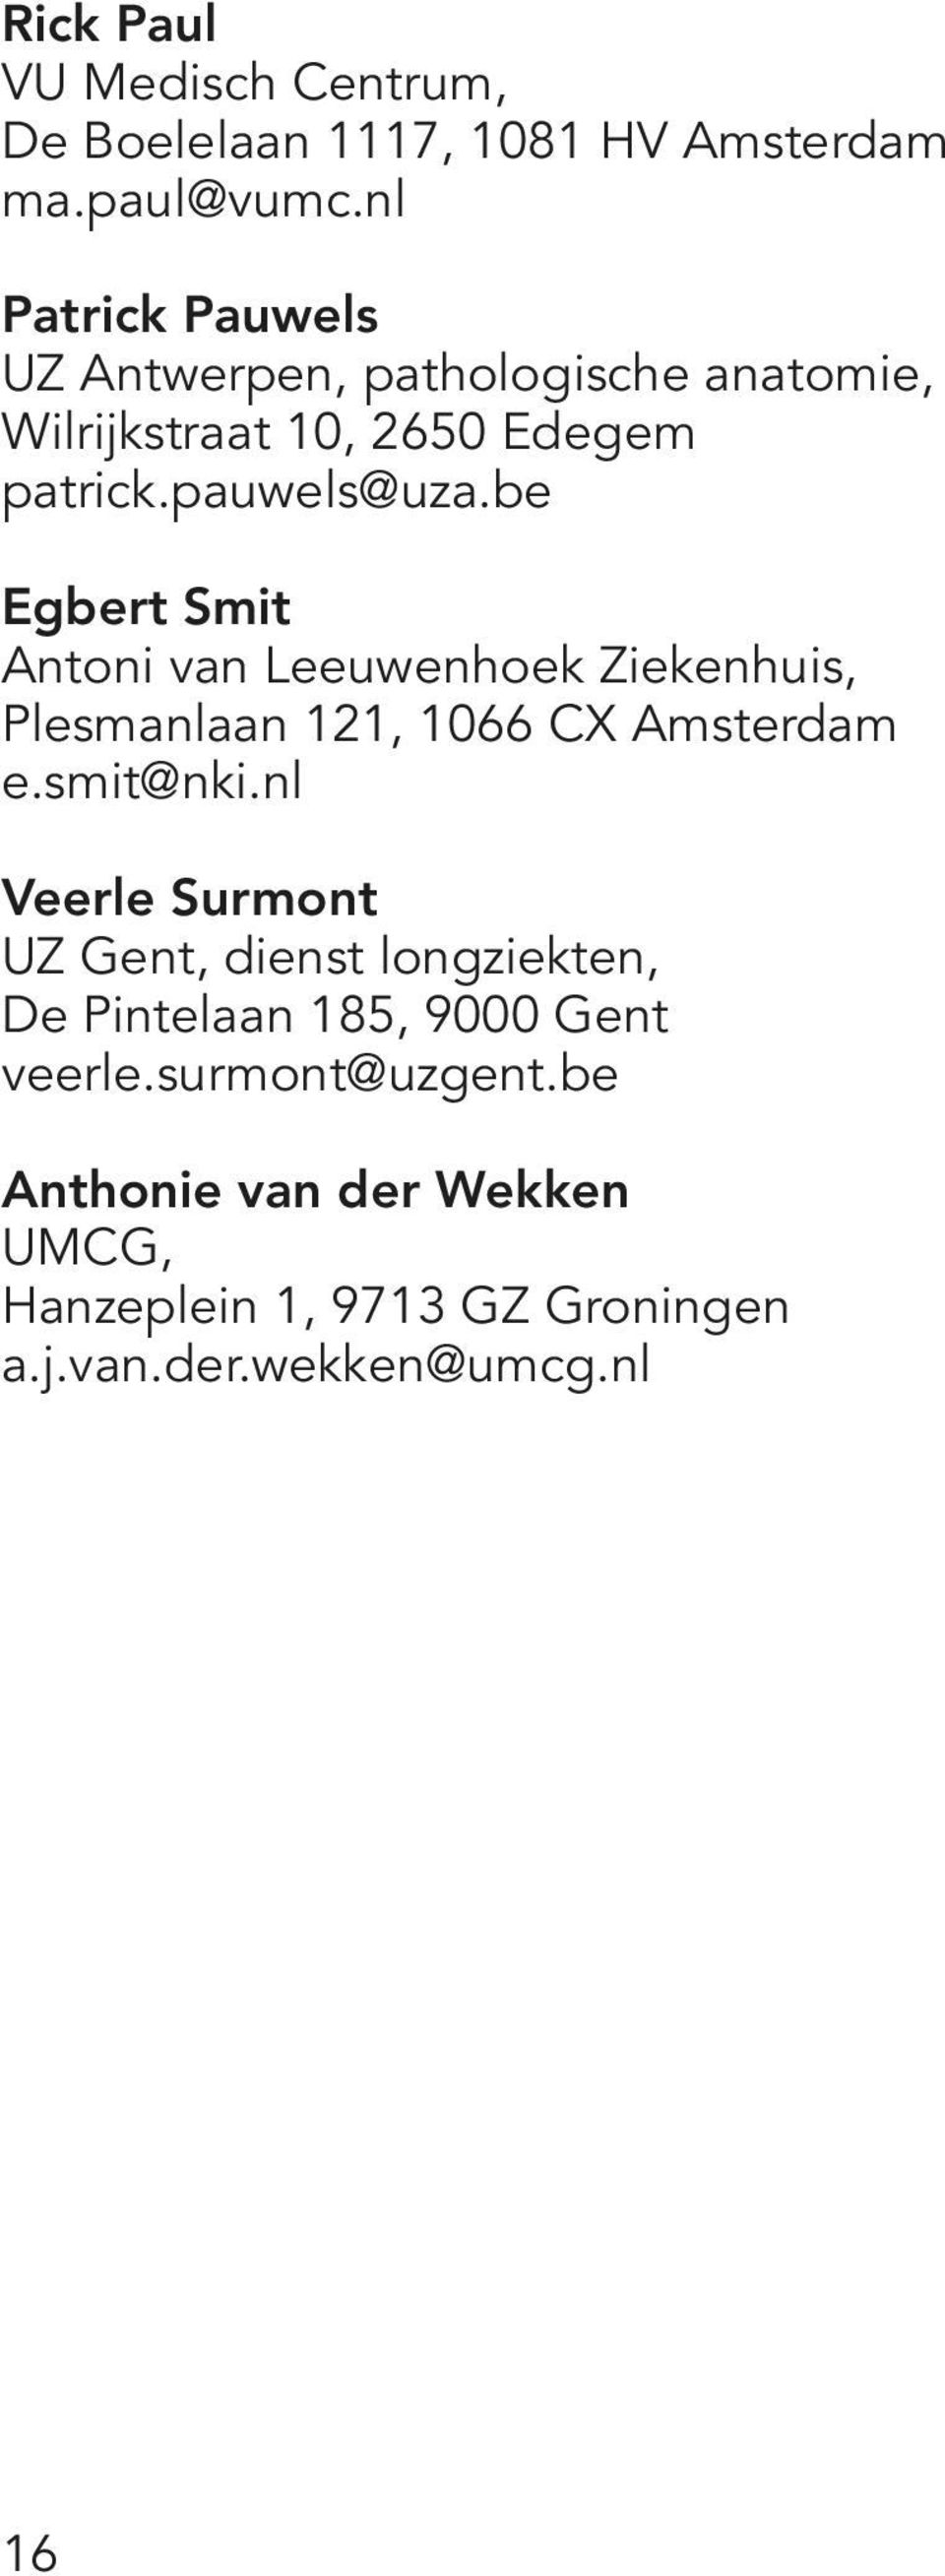 be Egbert Smit Antoni van Leeuwenhoek Ziekenhuis, Plesmanlaan 121, 1066 CX Amsterdam e.smit@nki.